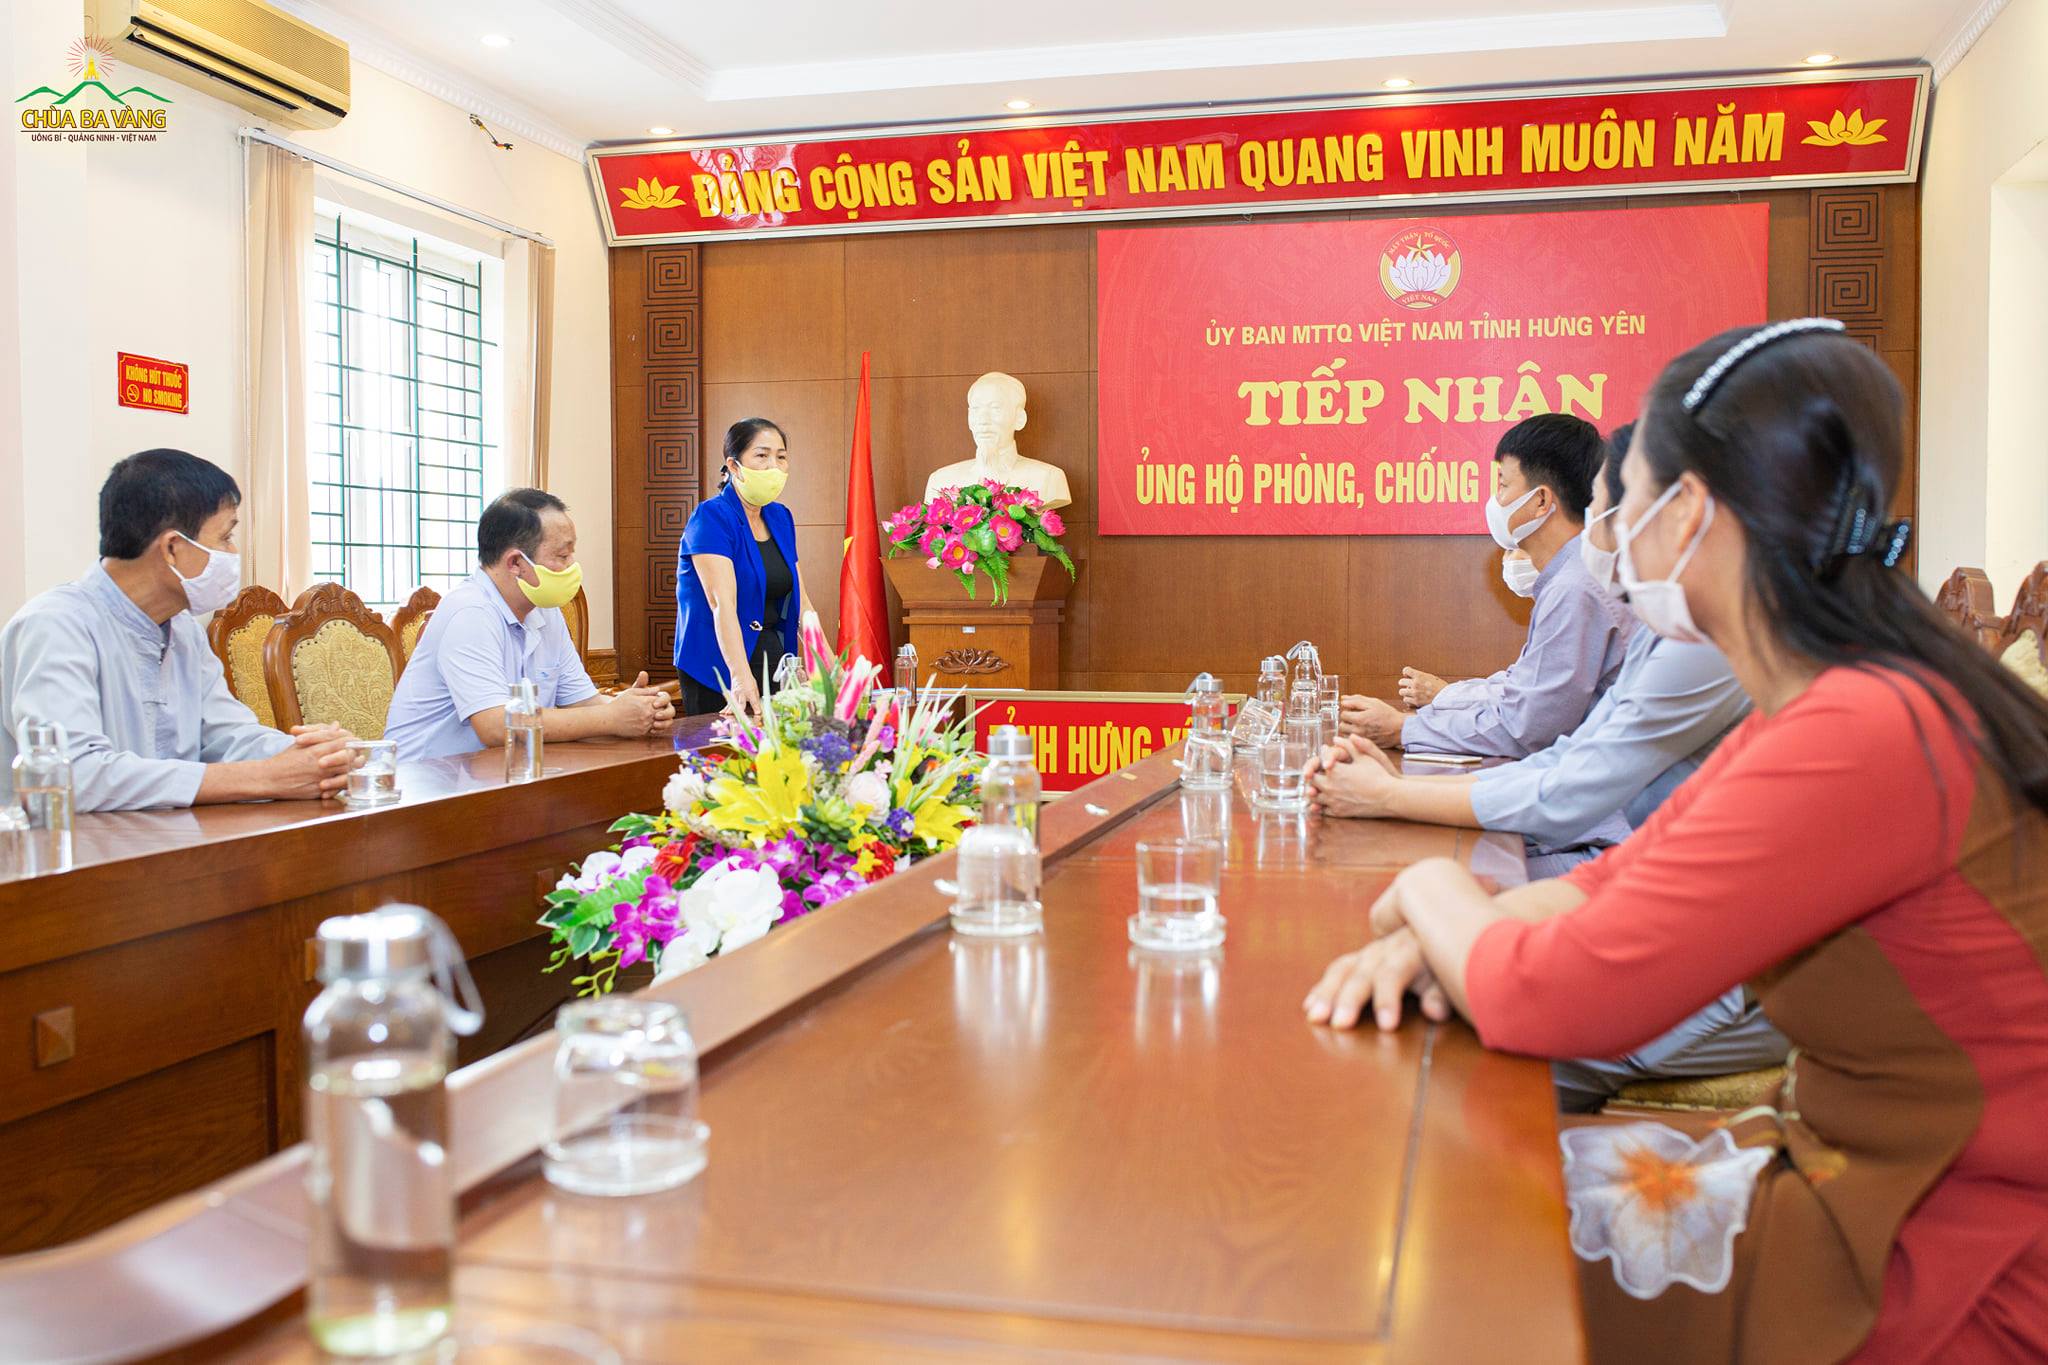 Phó Chủ tịch MTTQVN tỉnh Hưng Yên - bà Nguyễn Thị Kim Thúy đã đại diện cho các lãnh đạo gửi lời cảm ơn chân thành tới tấm lòng của các Phật tử chùa Ba Vàng